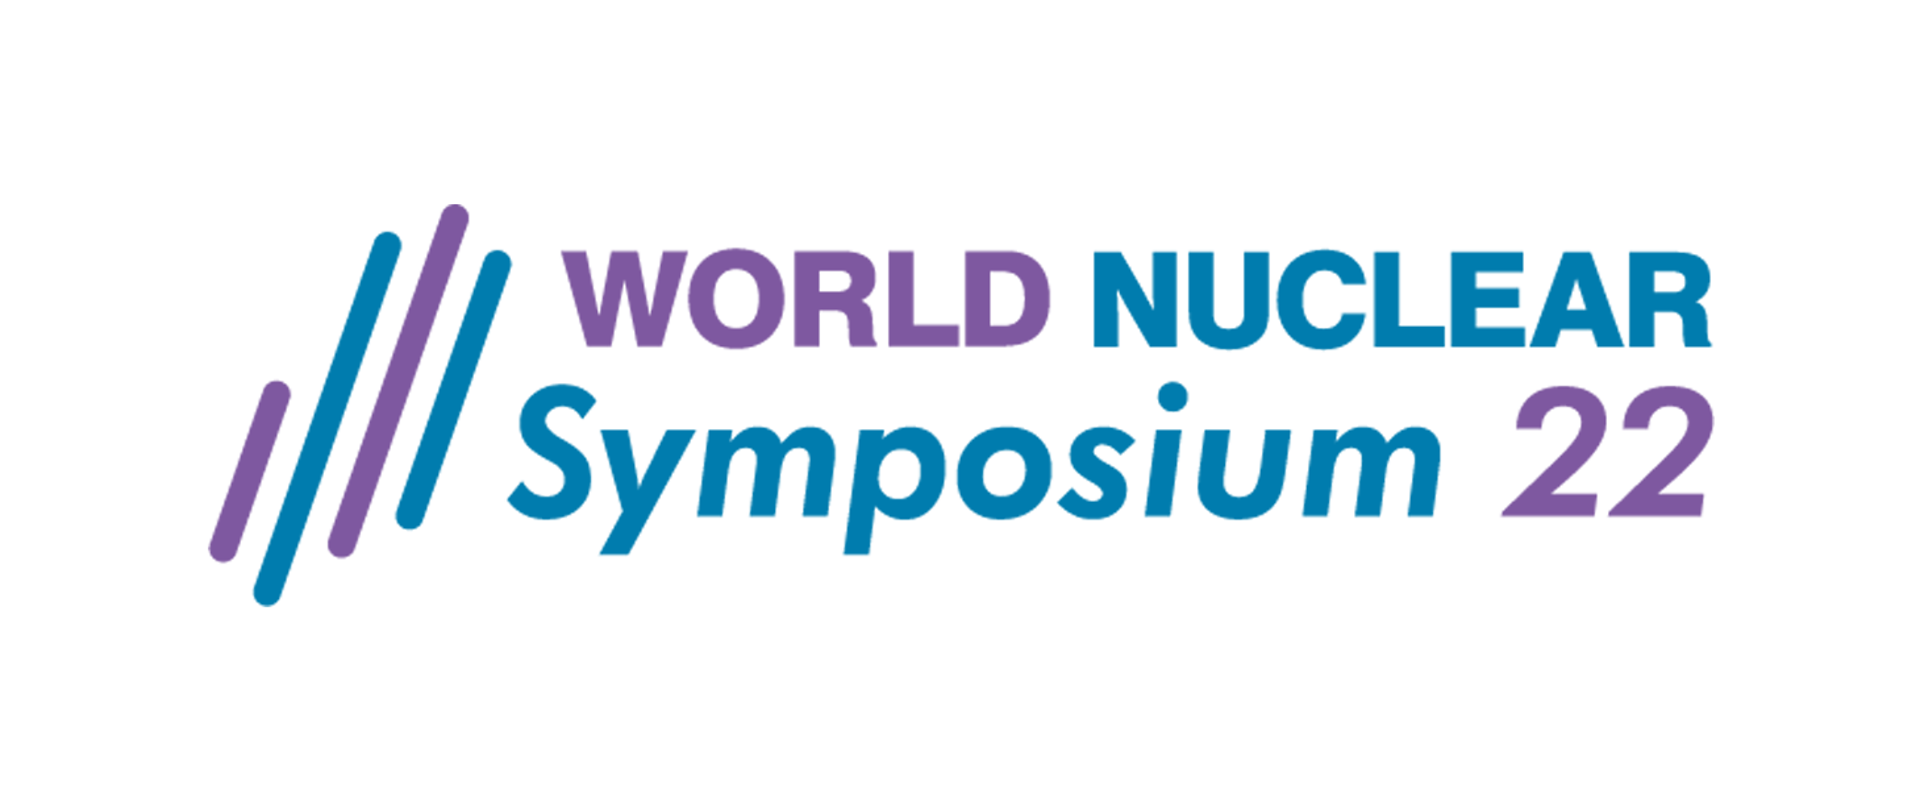 World Nuclear Symposium 2022